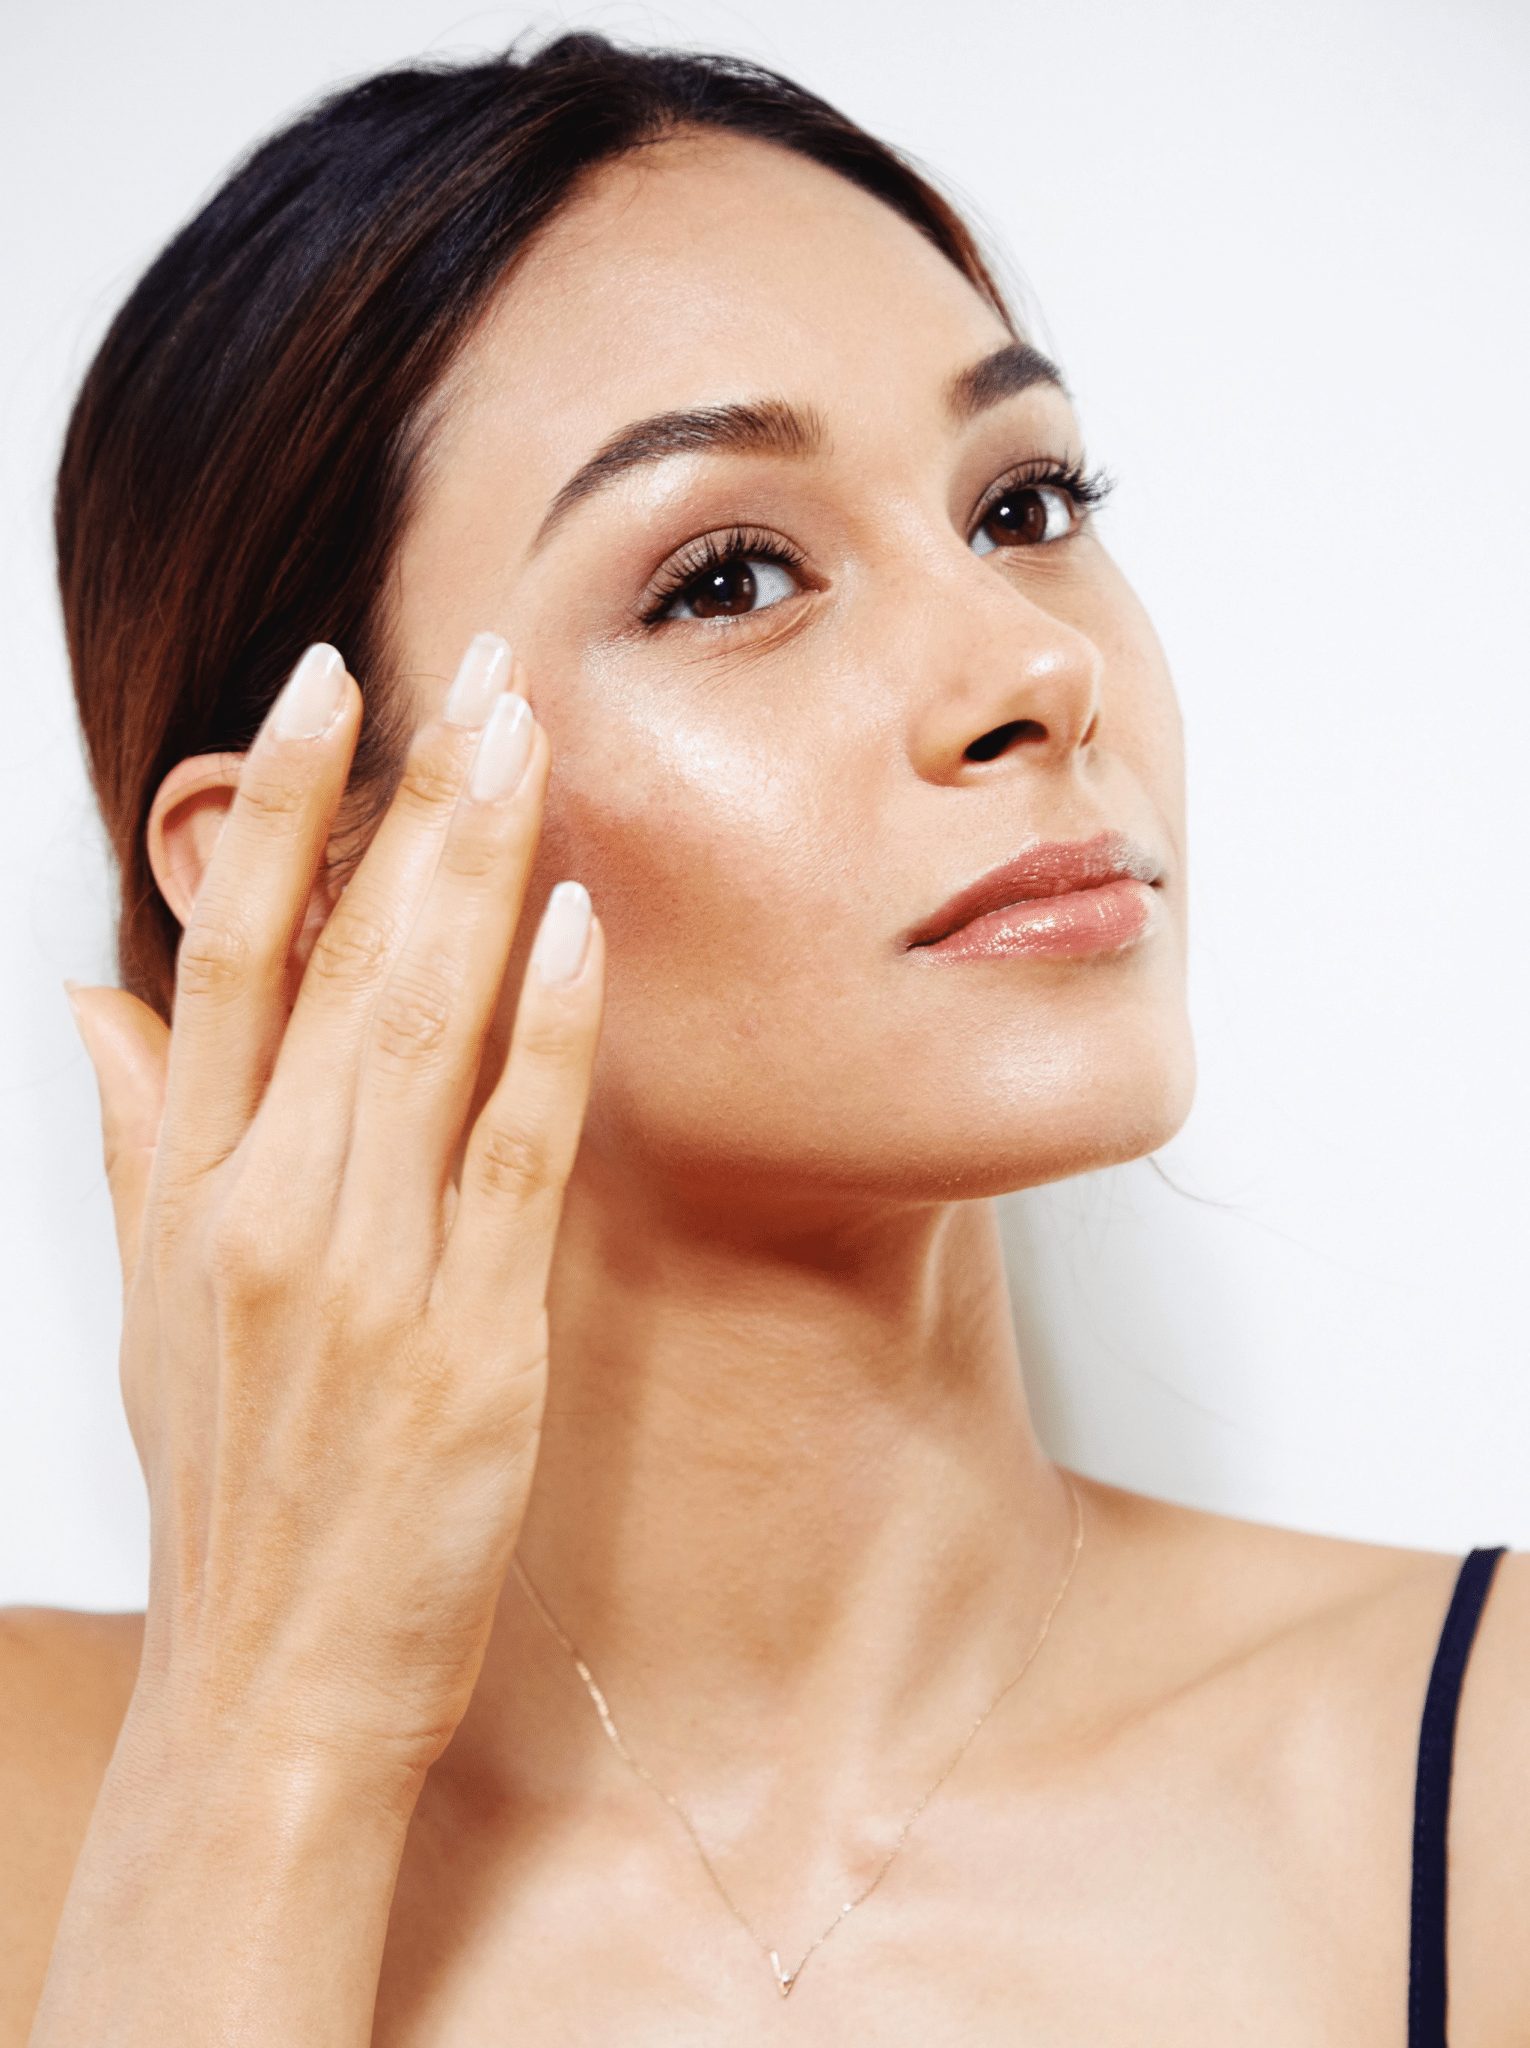 rửa mặt lại với nước rất quan trọng trong cách chăm sóc da mặt